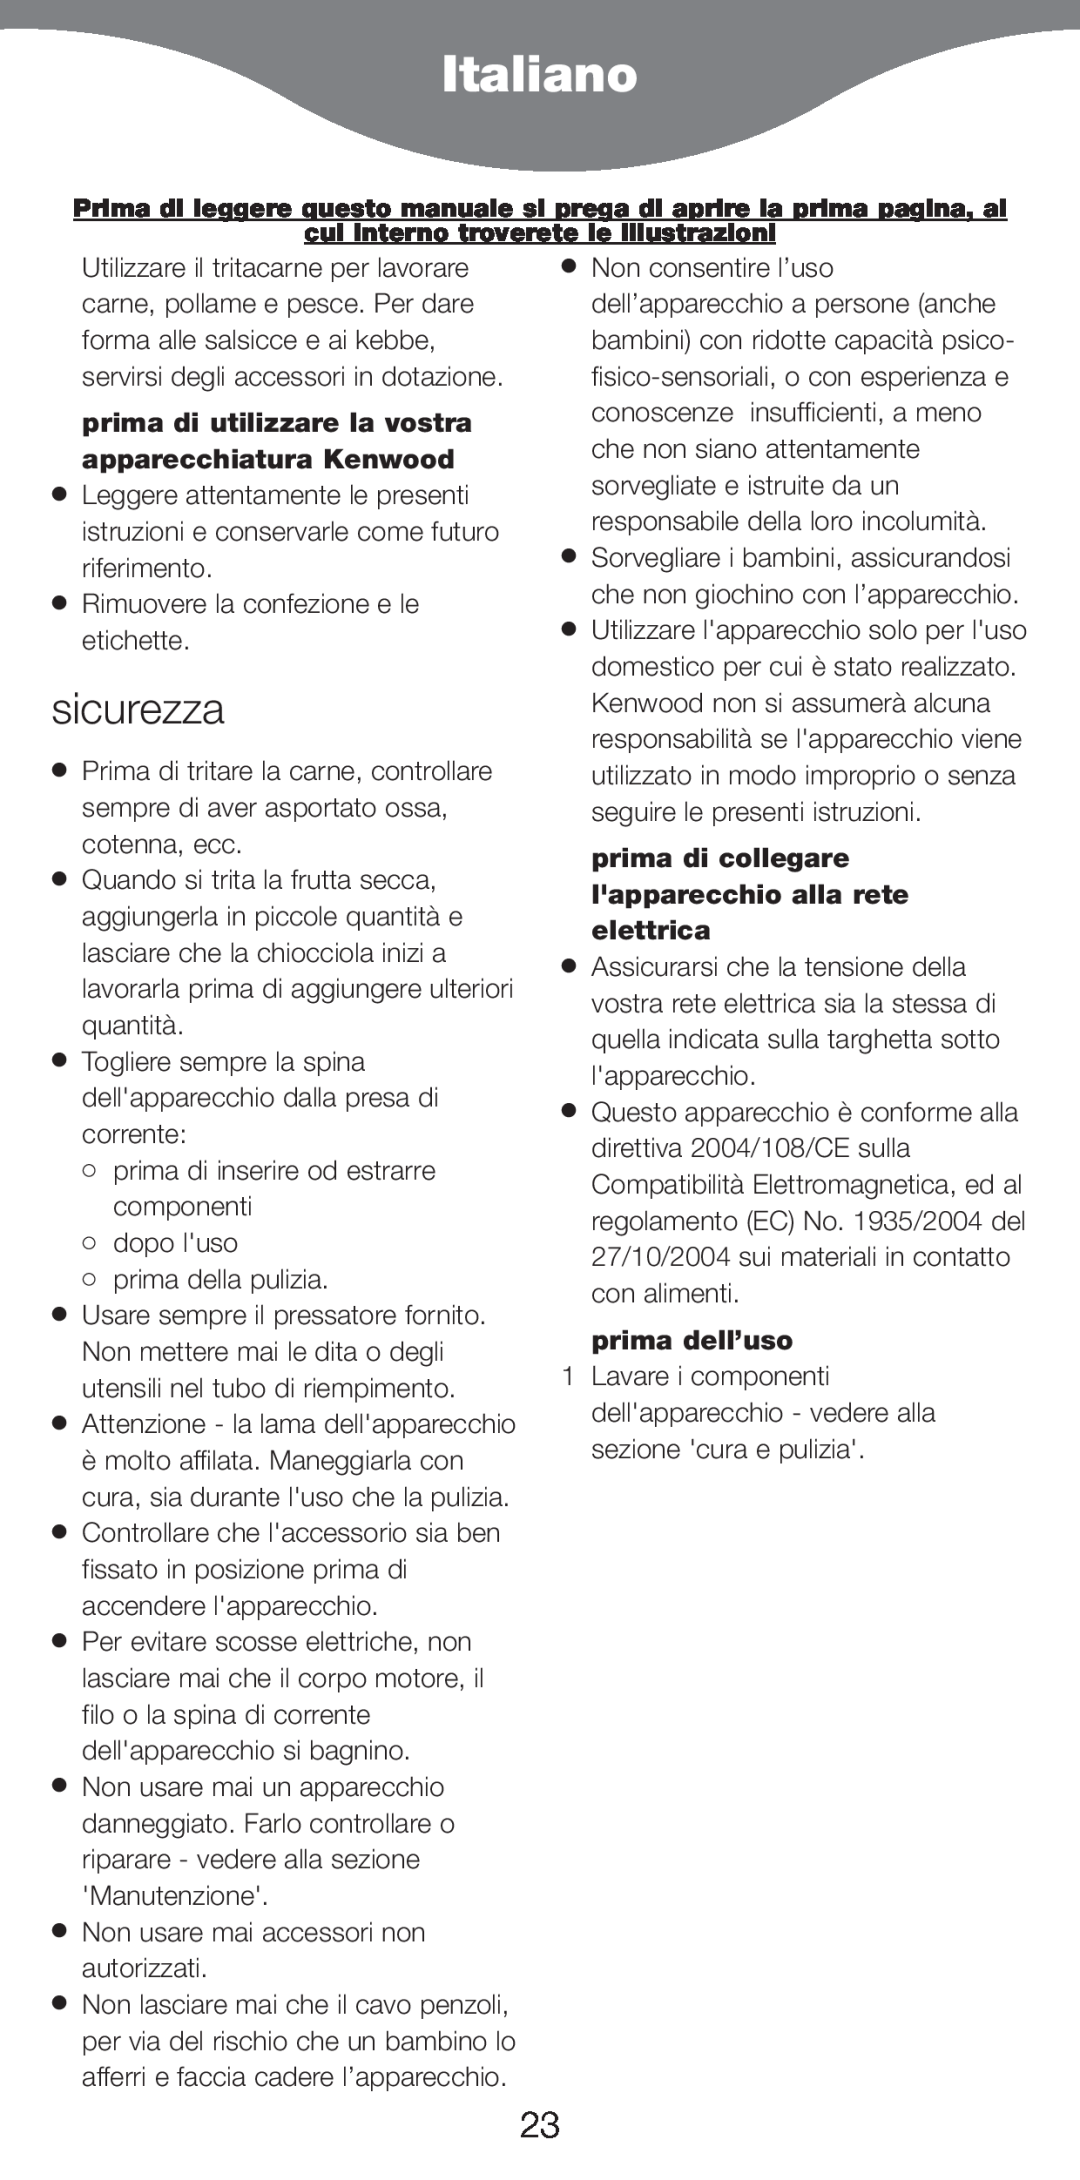 Kenwood MG510 manual Italiano, sicurezza, prima dell’uso 